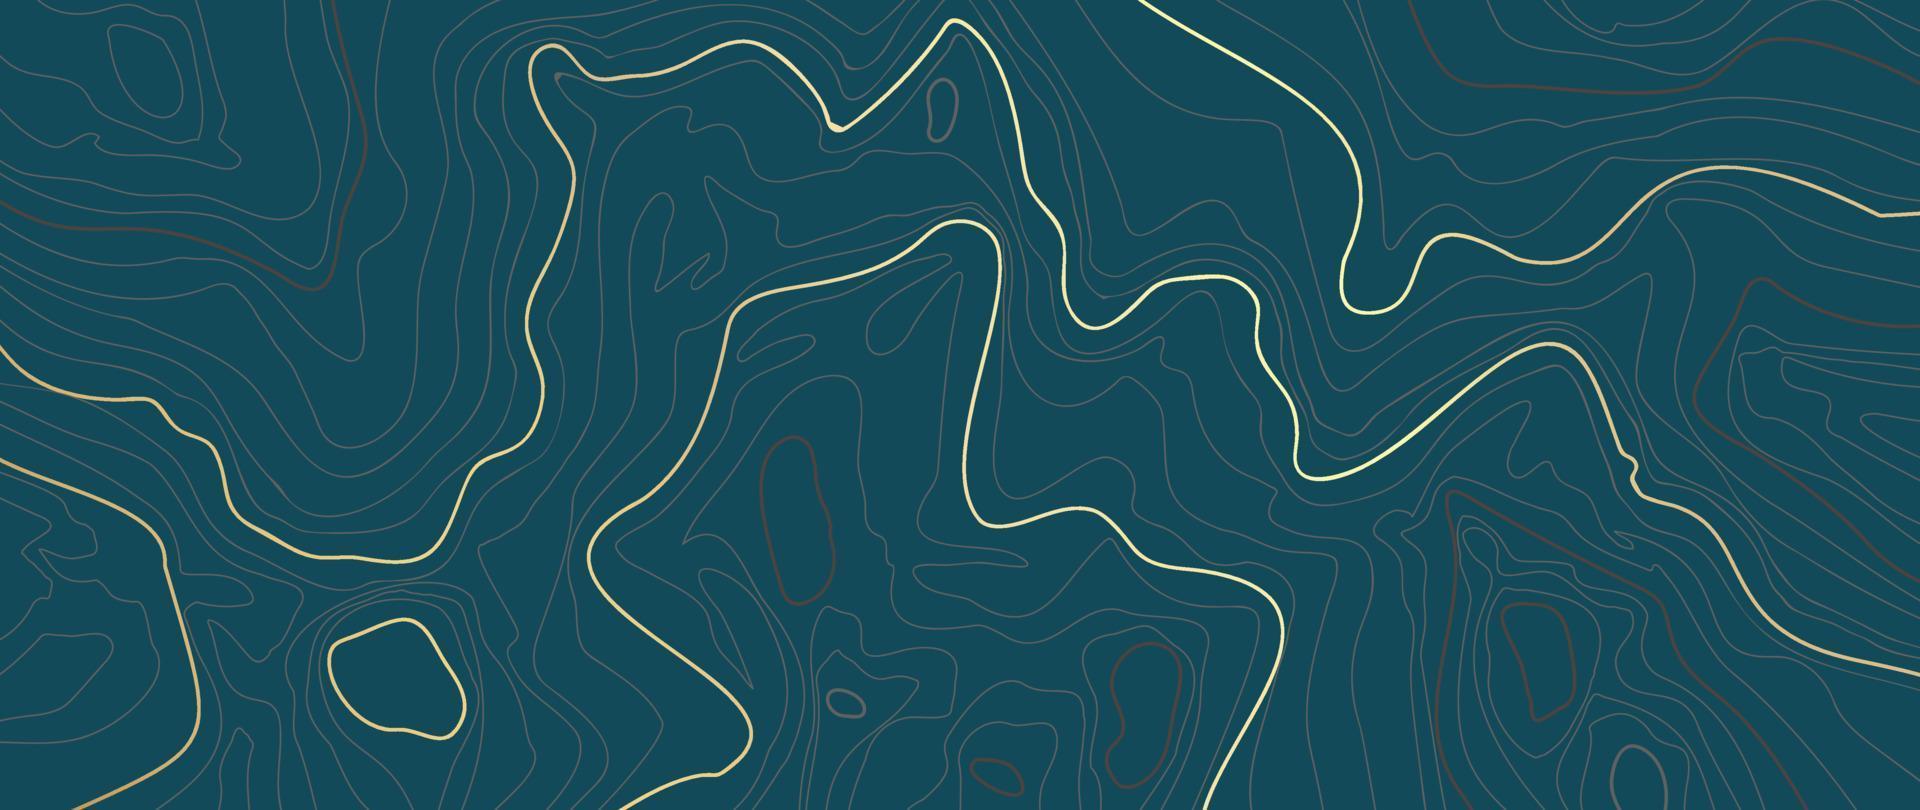 lyx guld abstrakt linje konst bakgrund vektor. berg topografisk terräng Karta bakgrund med guld rader textur. design illustration för vägg konst, tyg, förpackning, webb, baner, app, tapet. vektor